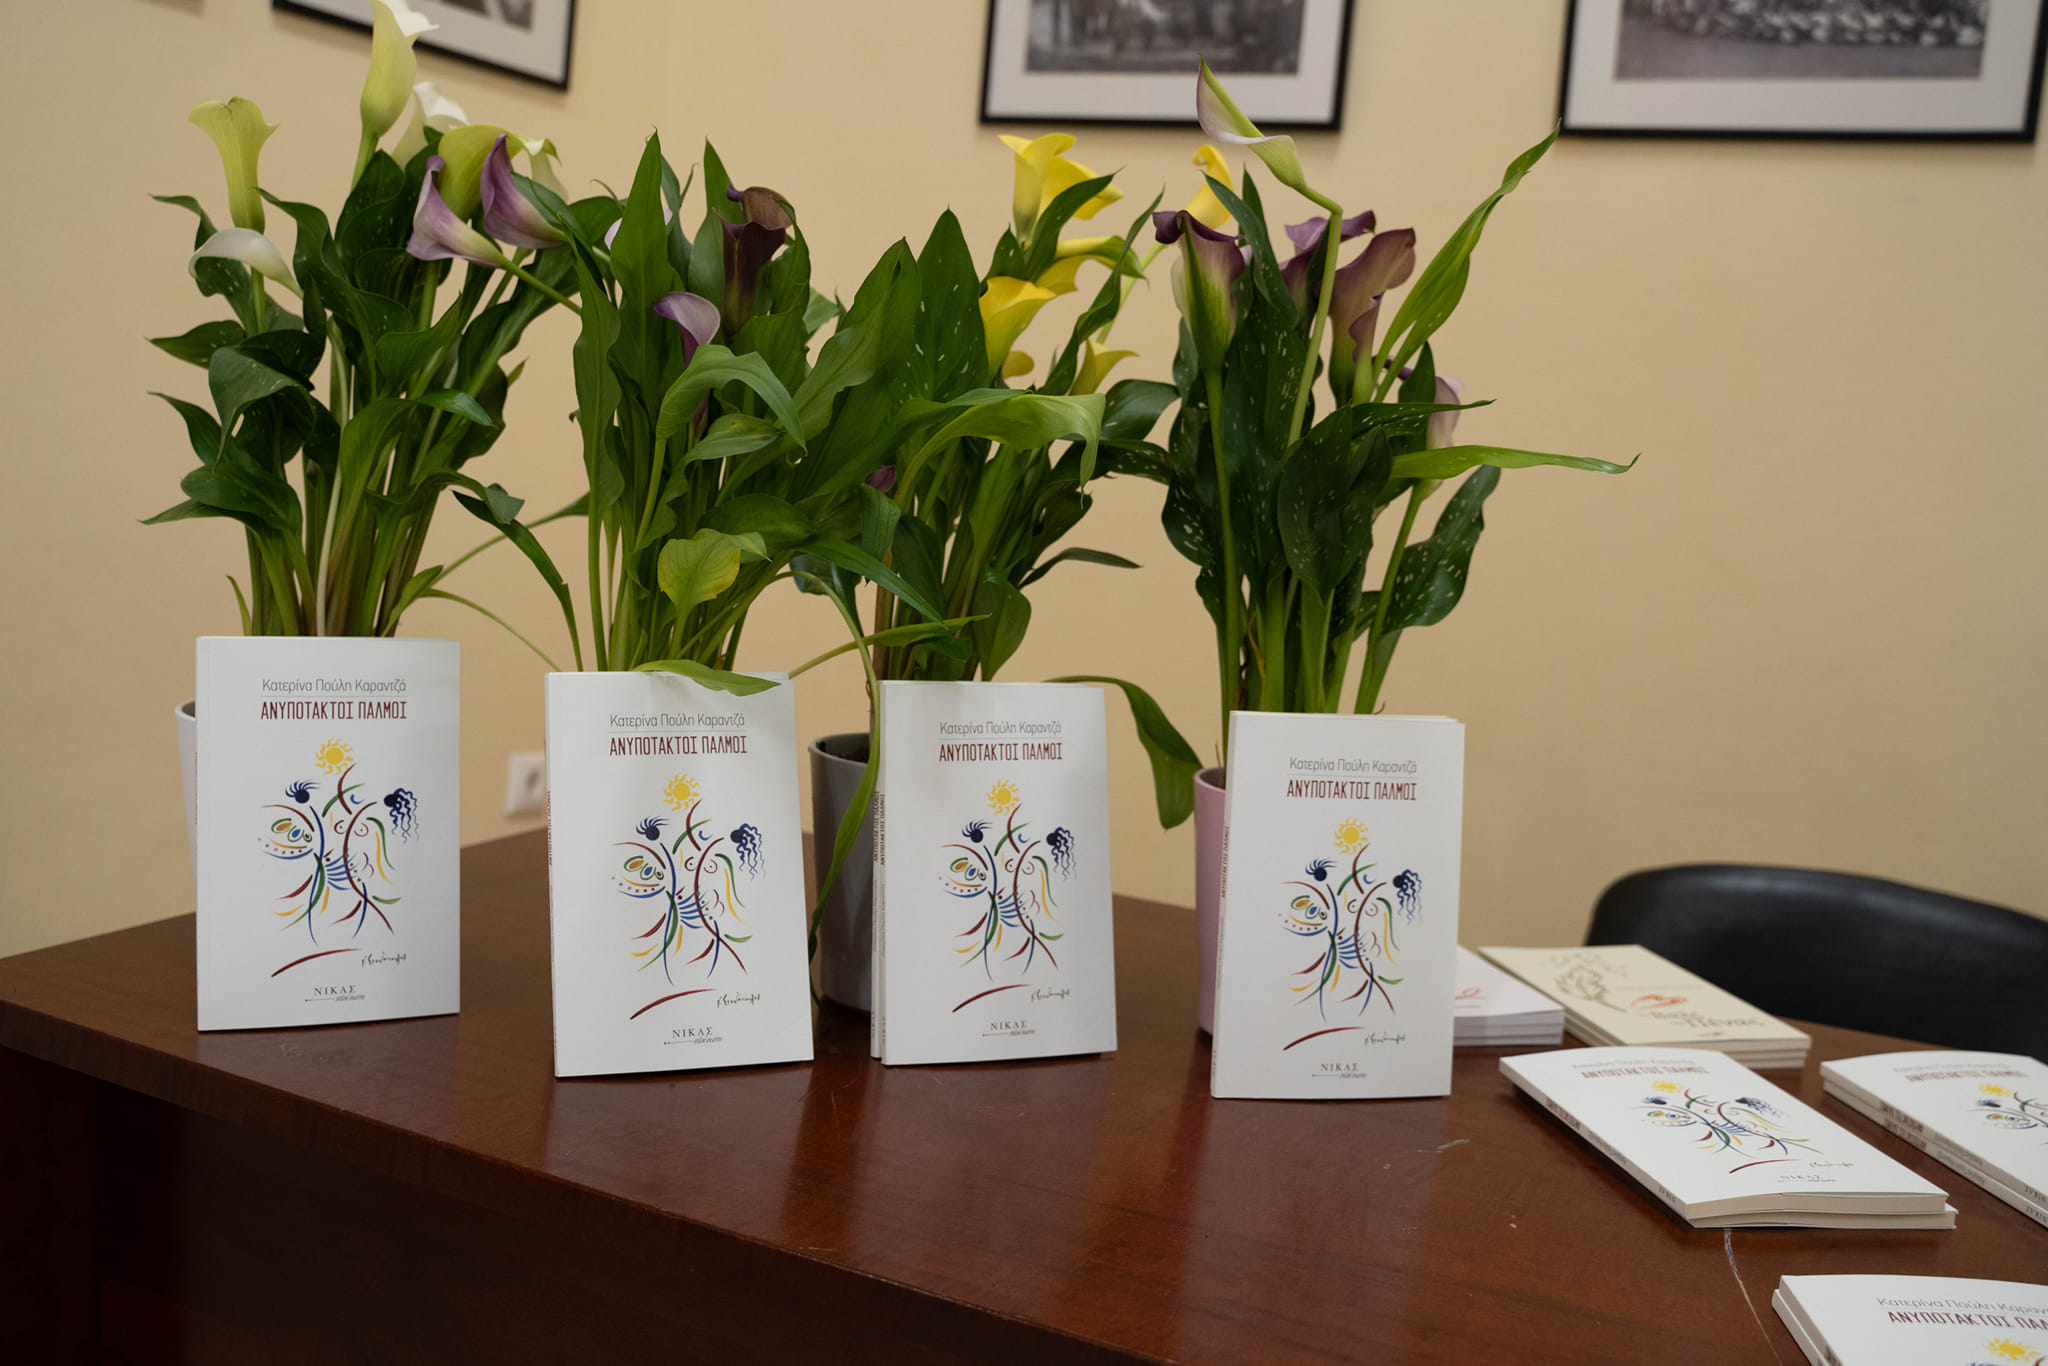 Παρουσίαση βιβλίου Κατερίνας Καραντζά “Ανυπότακτοι Παλμοί” σε Δήμο Φιλιατών